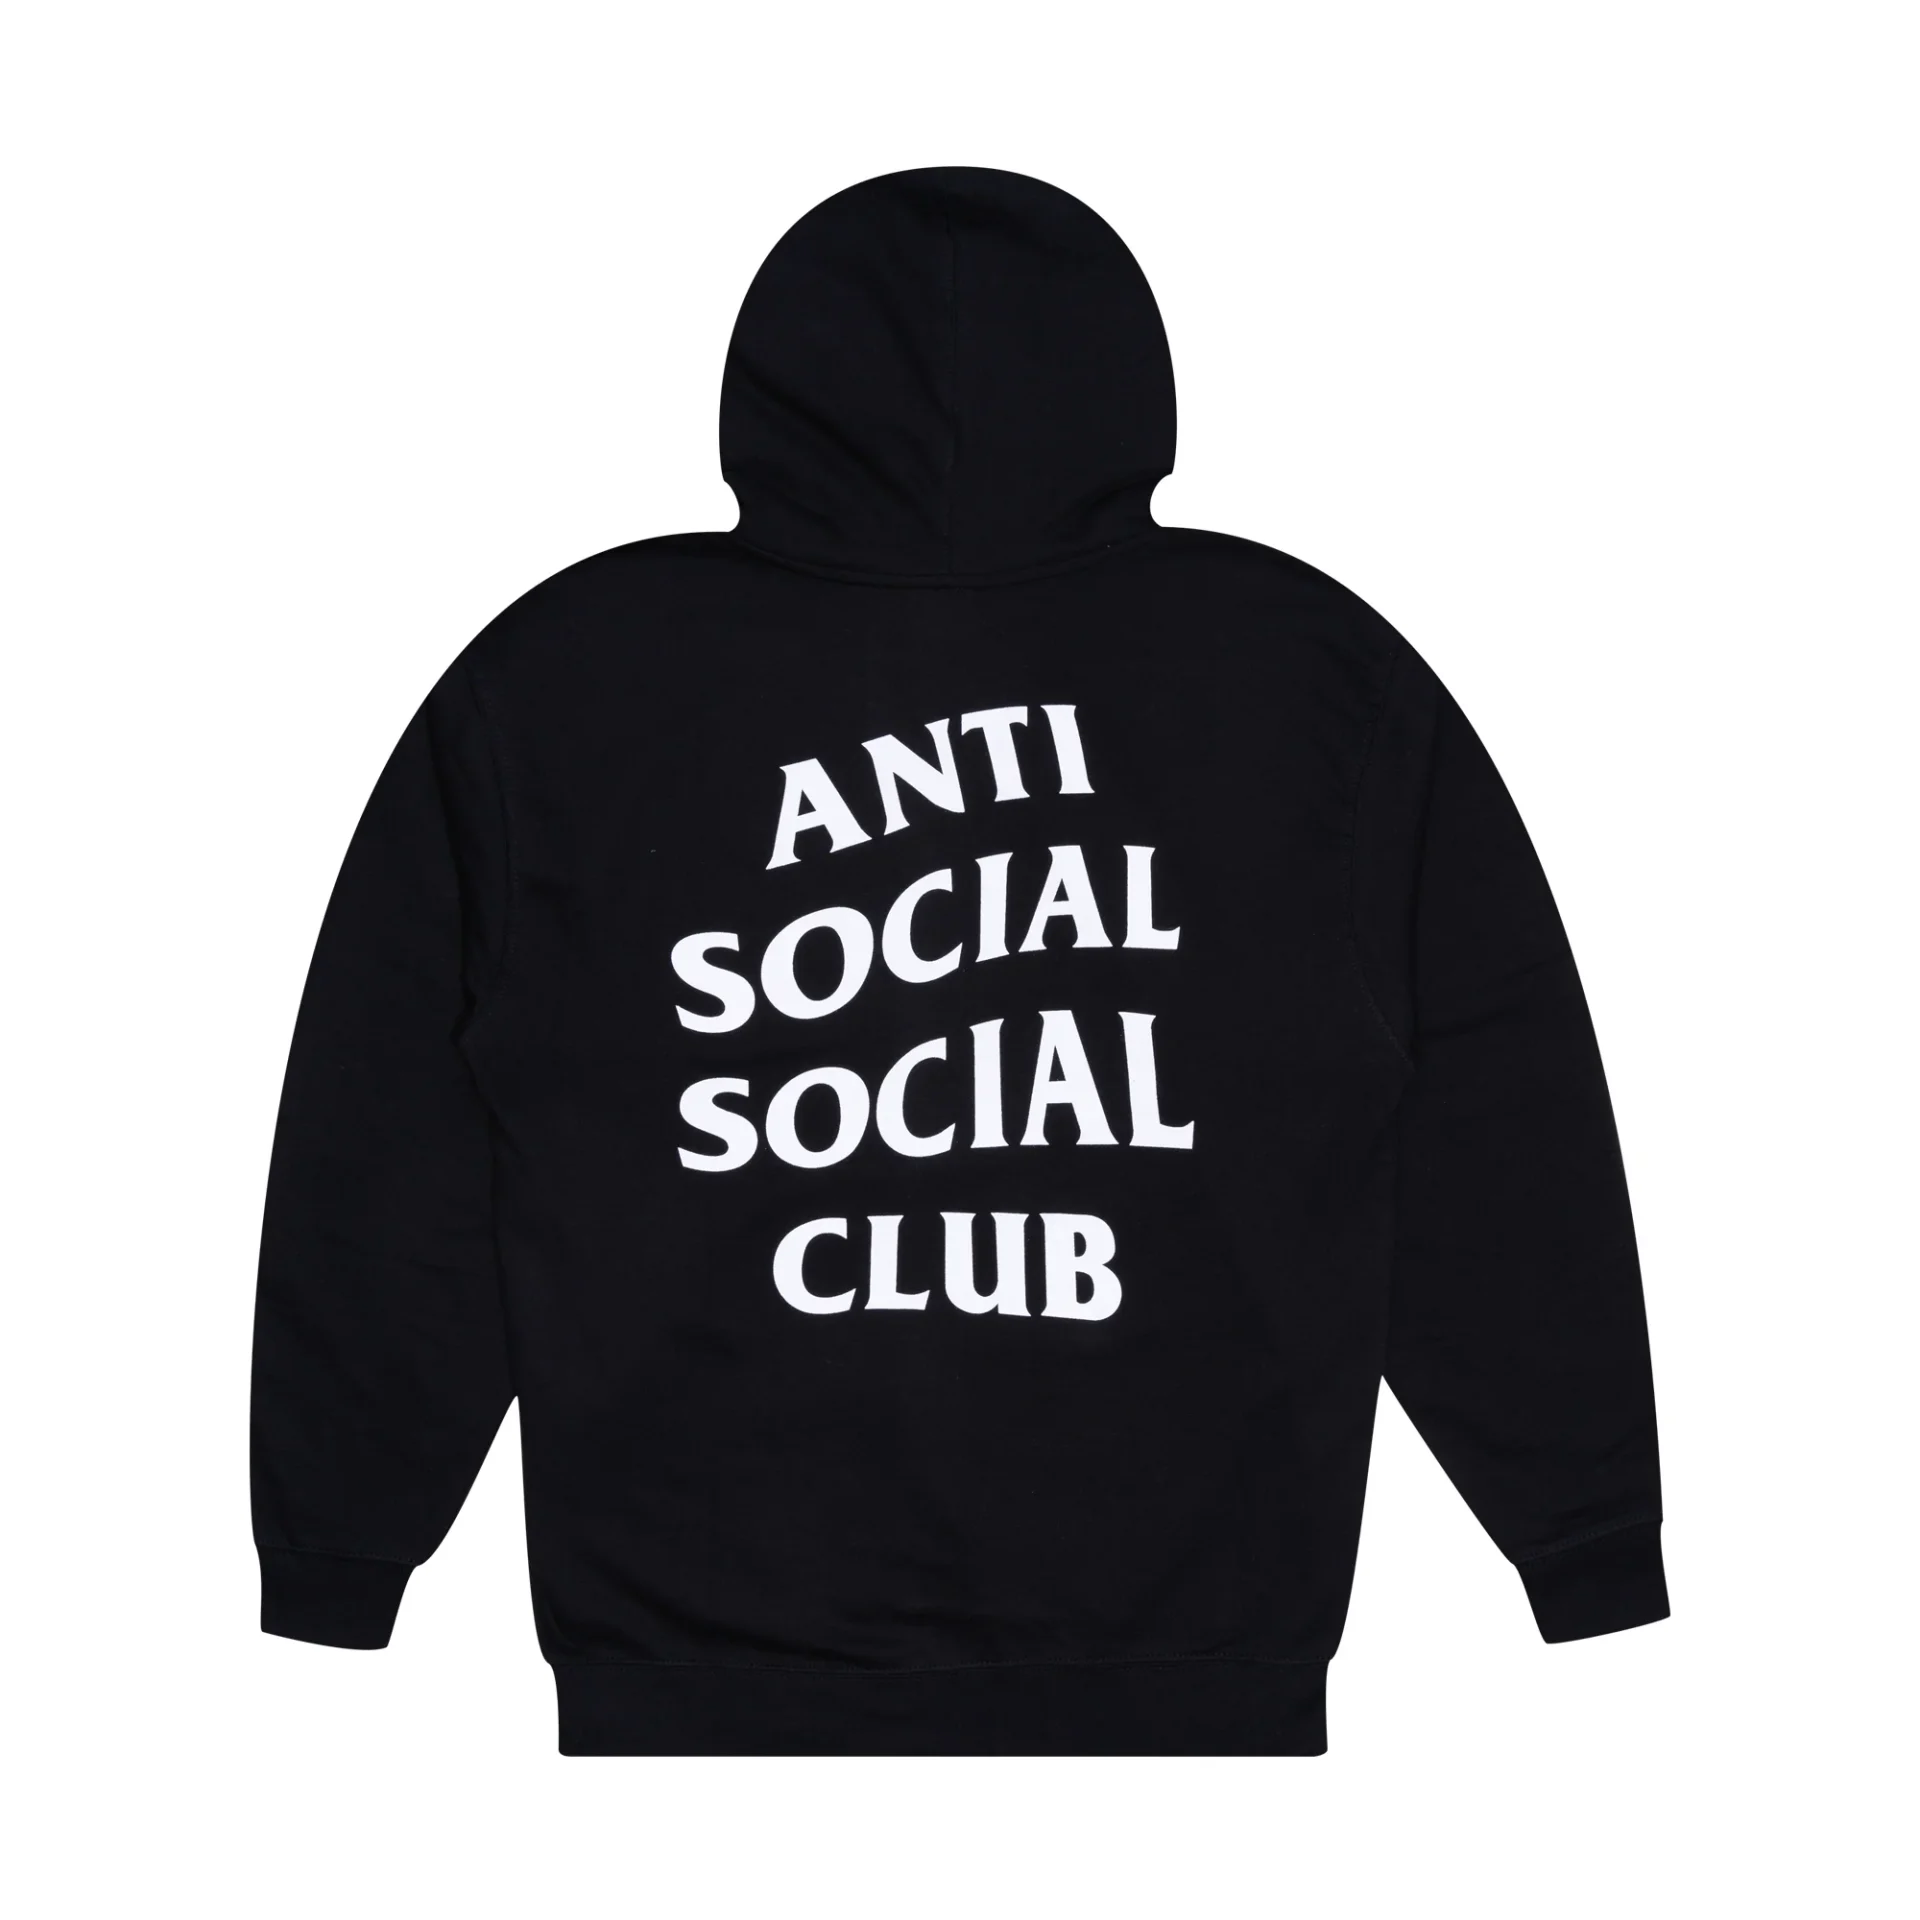 Anti Social Club Hoodies